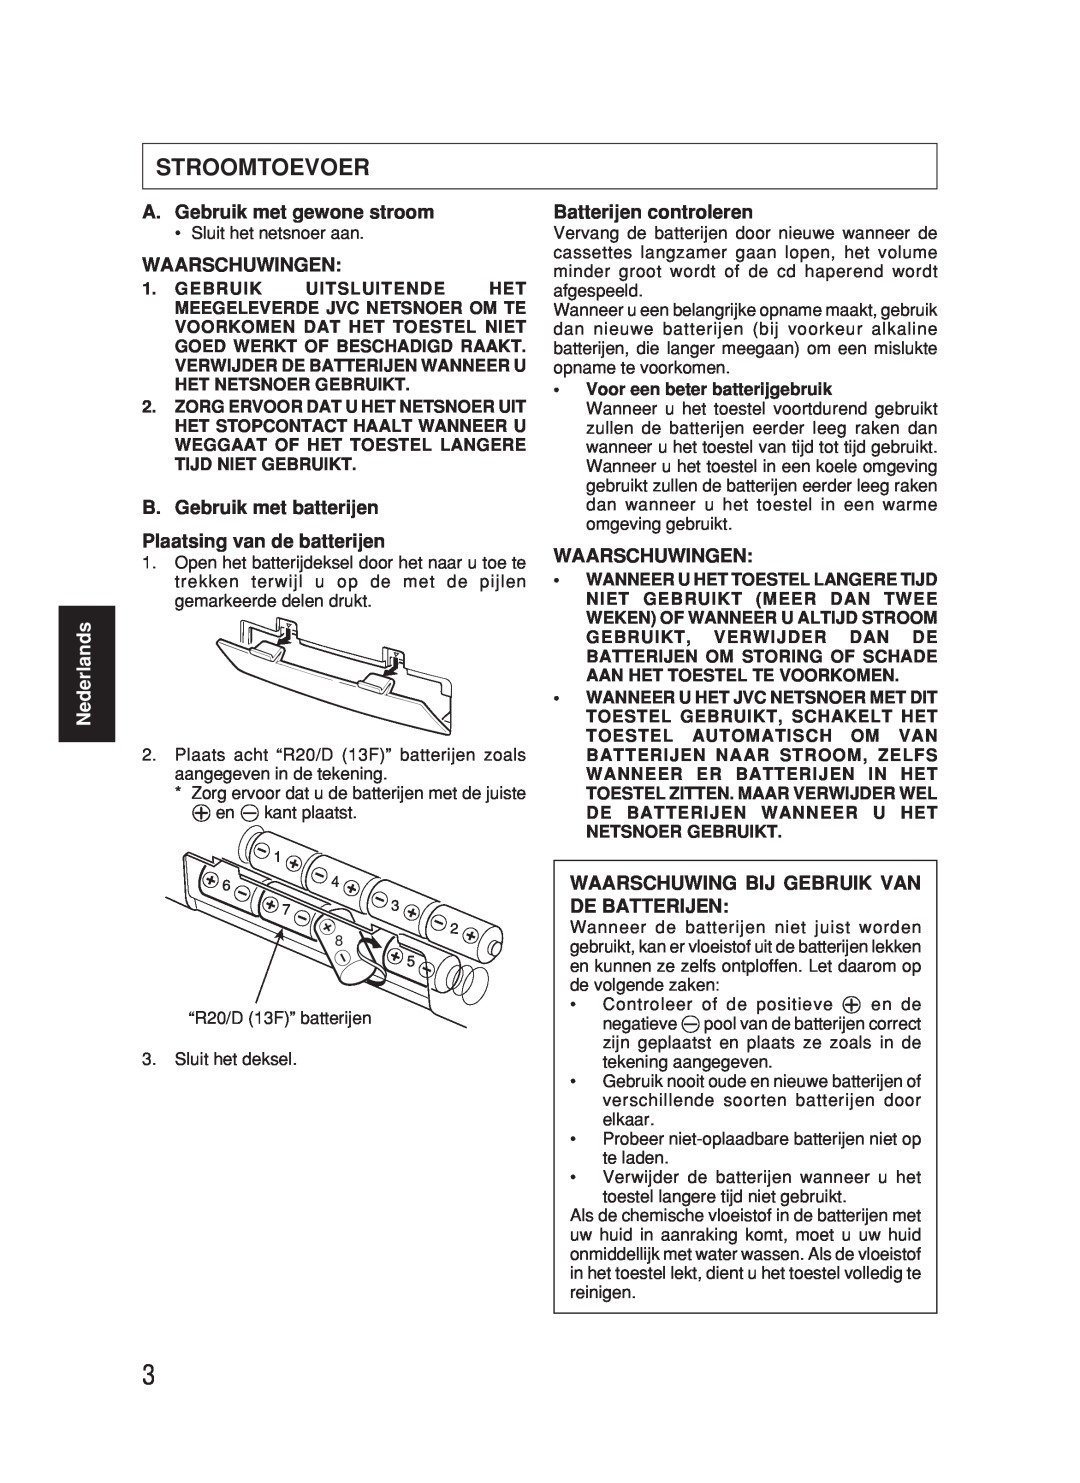 JVC RC-BX530SL manual Stroomtoevoer, A.Gebruik met gewone stroom, Waarschuwingen, B. Gebruik met batterijen, Nederlands 